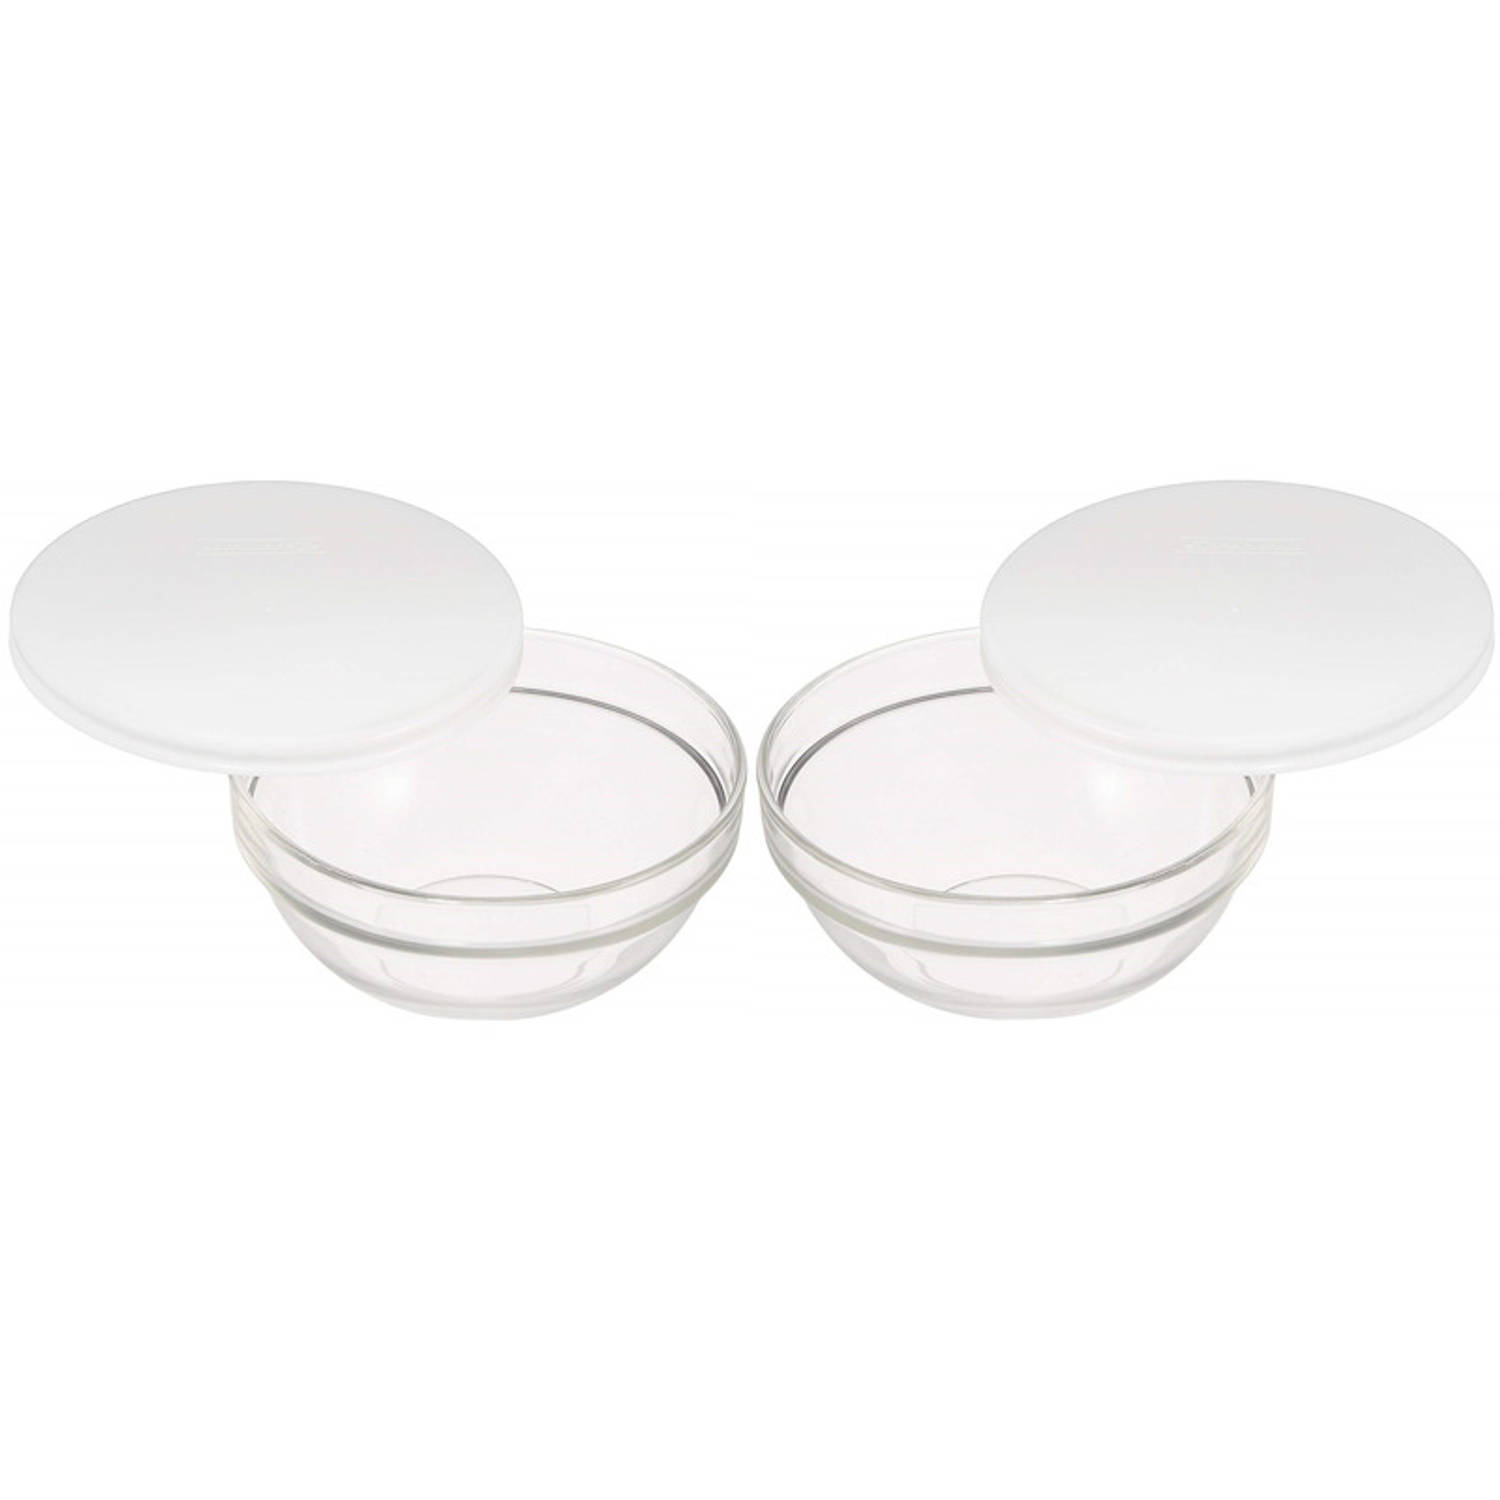 LUMINARC 2x Glazen schaal/kom met deksel 20 cm - Sla/salade serveren - Schalen/kommen van glas - Keukenbenodigdheden